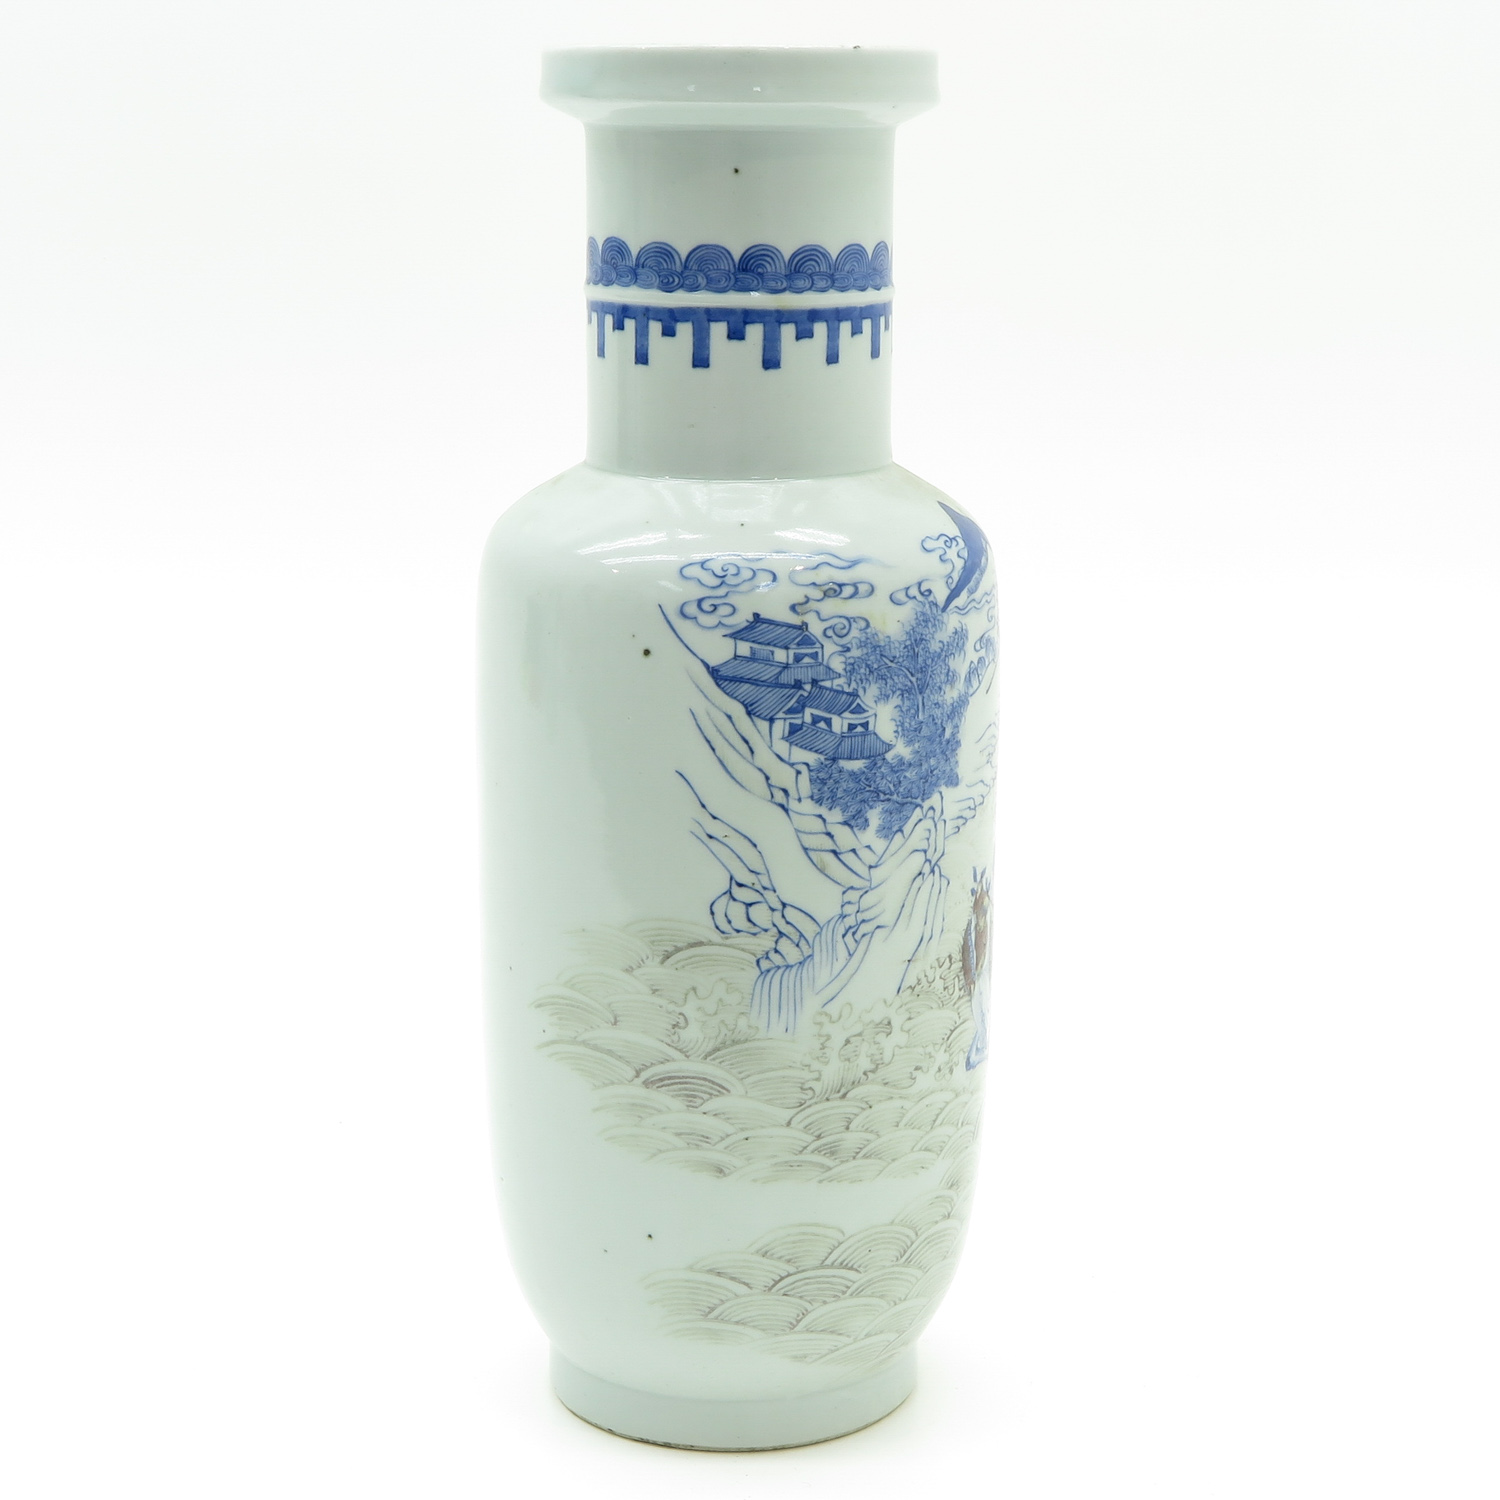 China Porcelain Roll Wagon Vase - Image 4 of 6